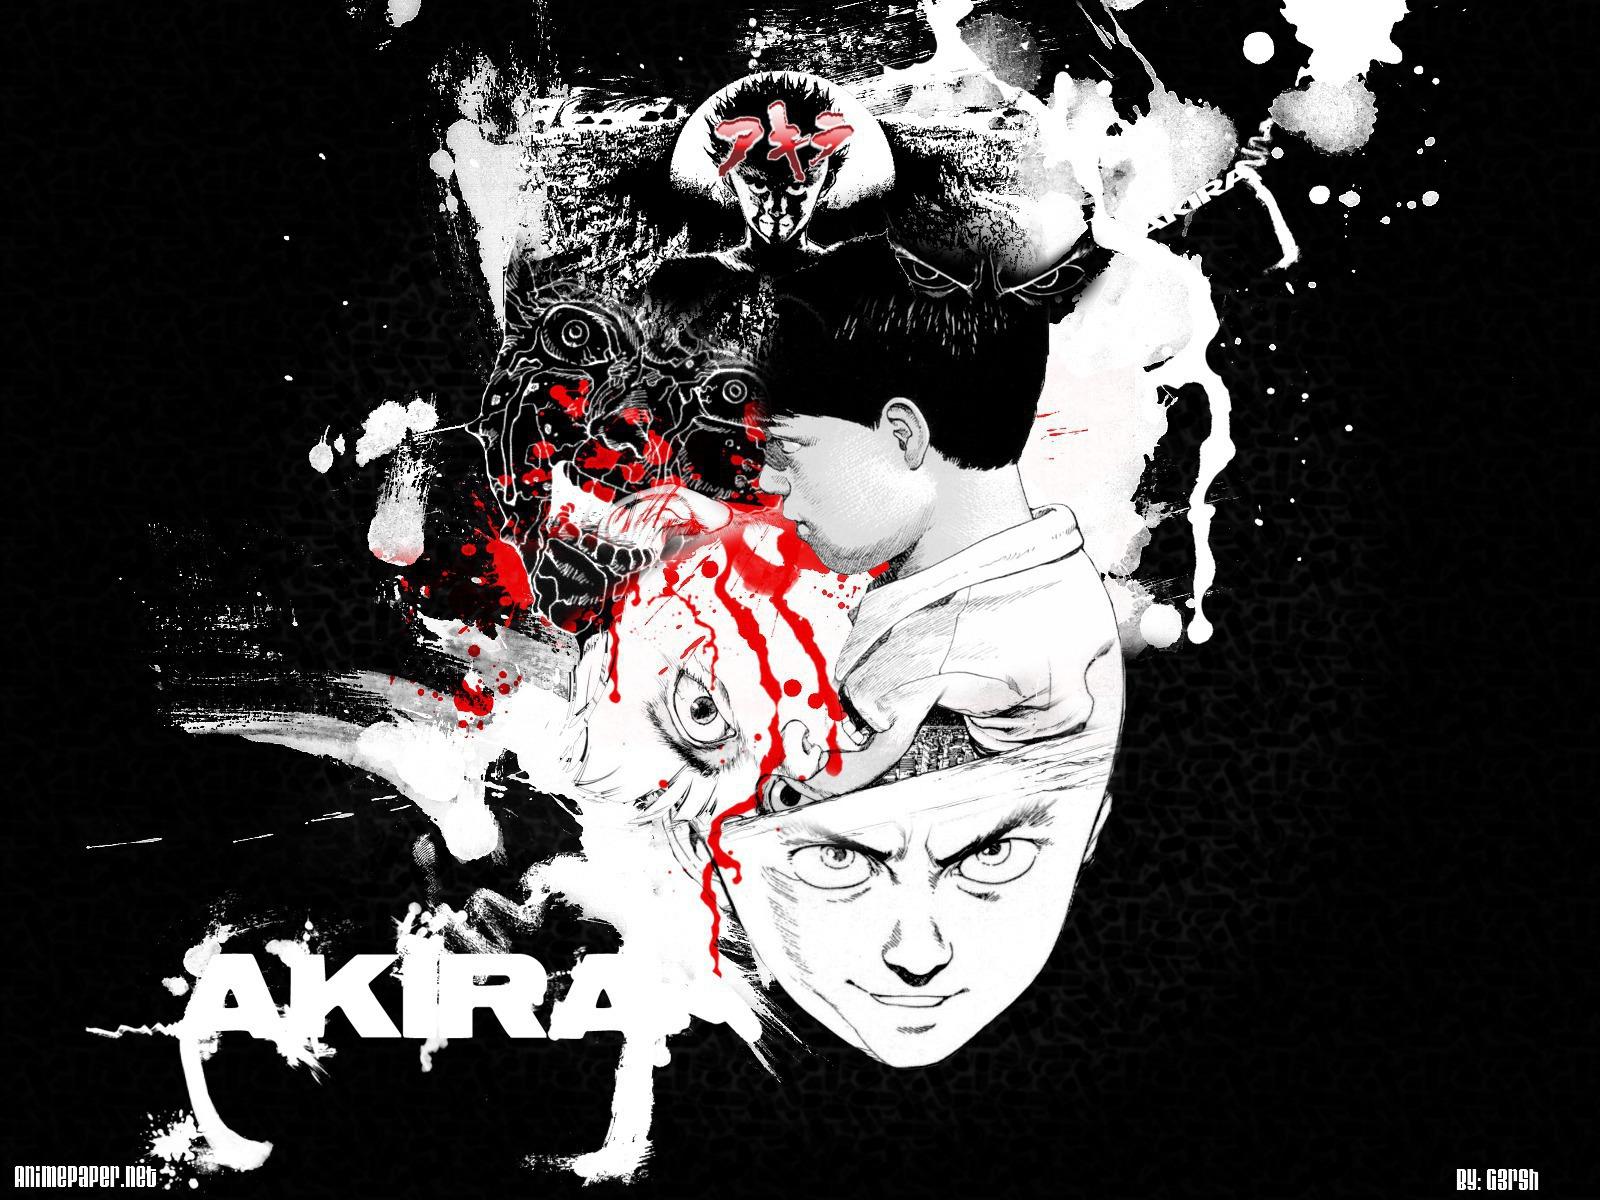 Akira Wallpaper And Background Id